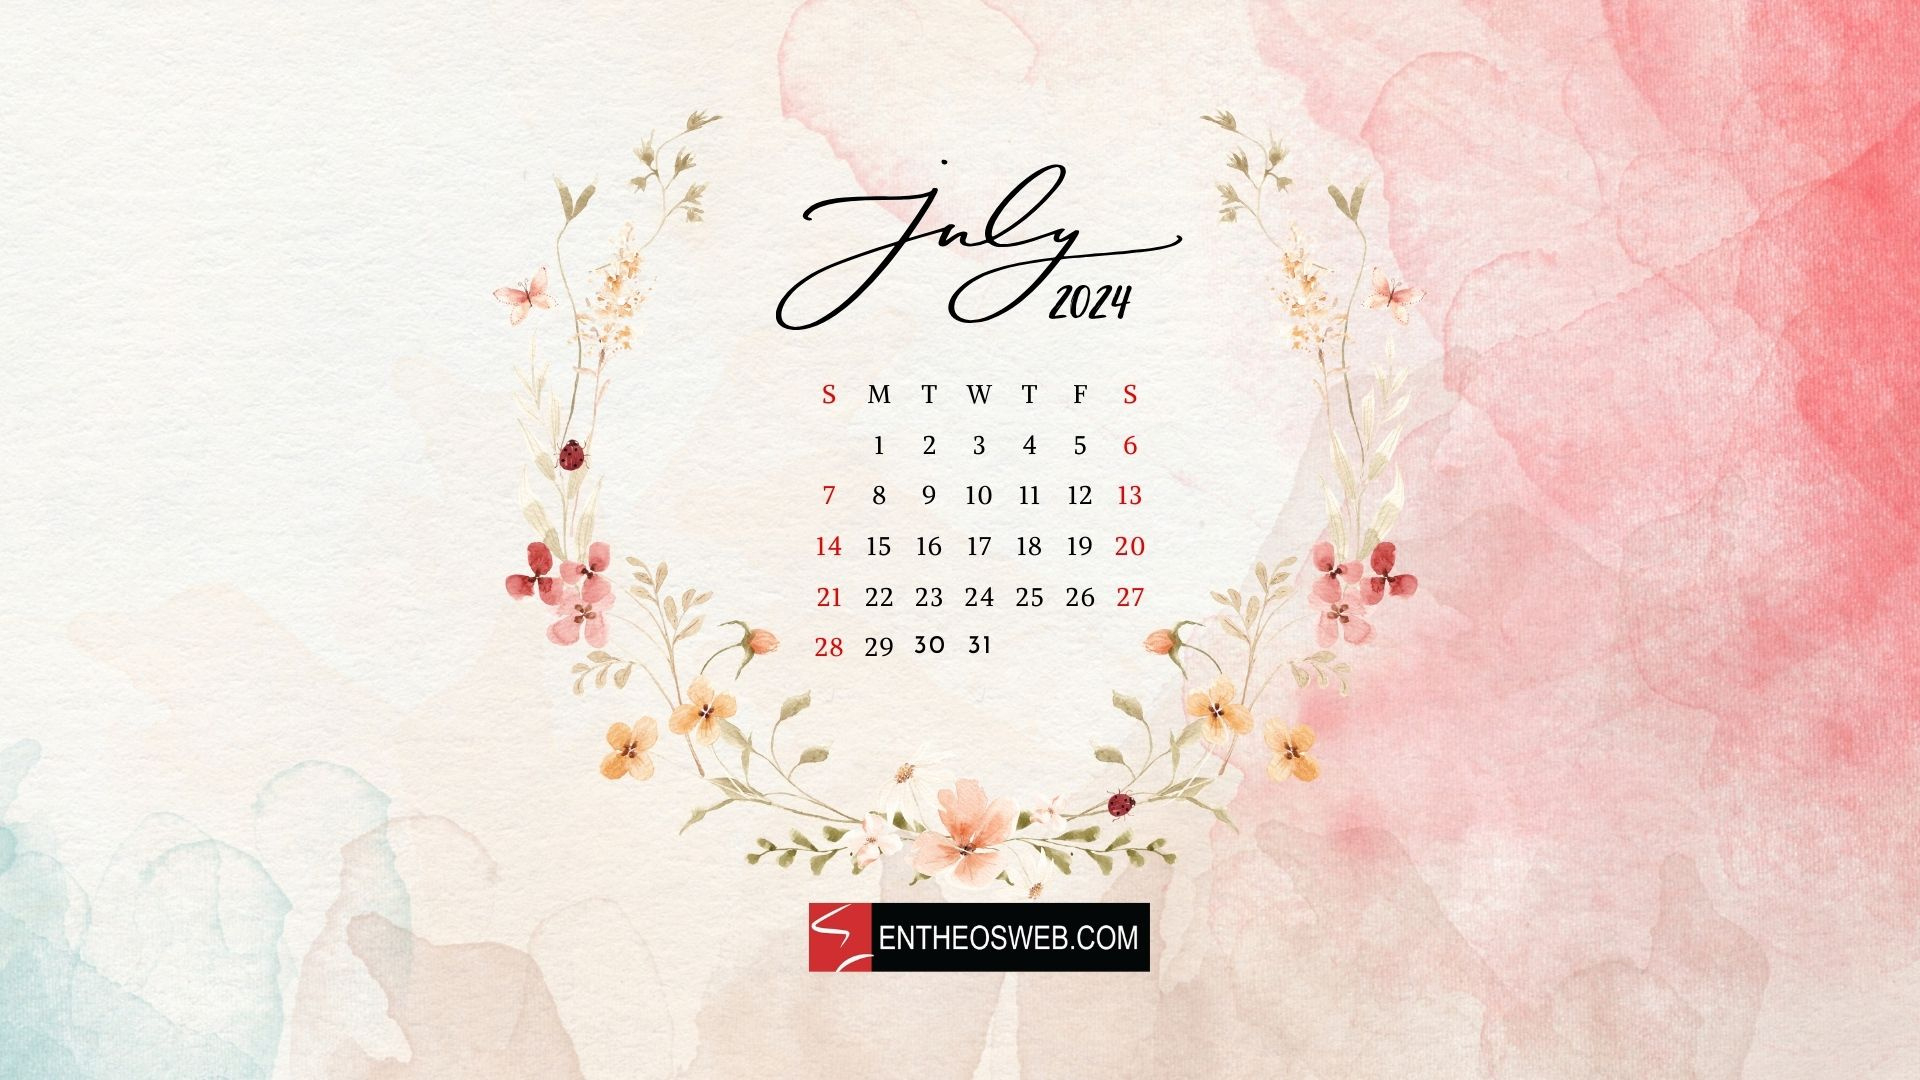 July 2024 Desktop Wallpaper Calendar | Entheosweb throughout July 2024 Calendar Wallpaper